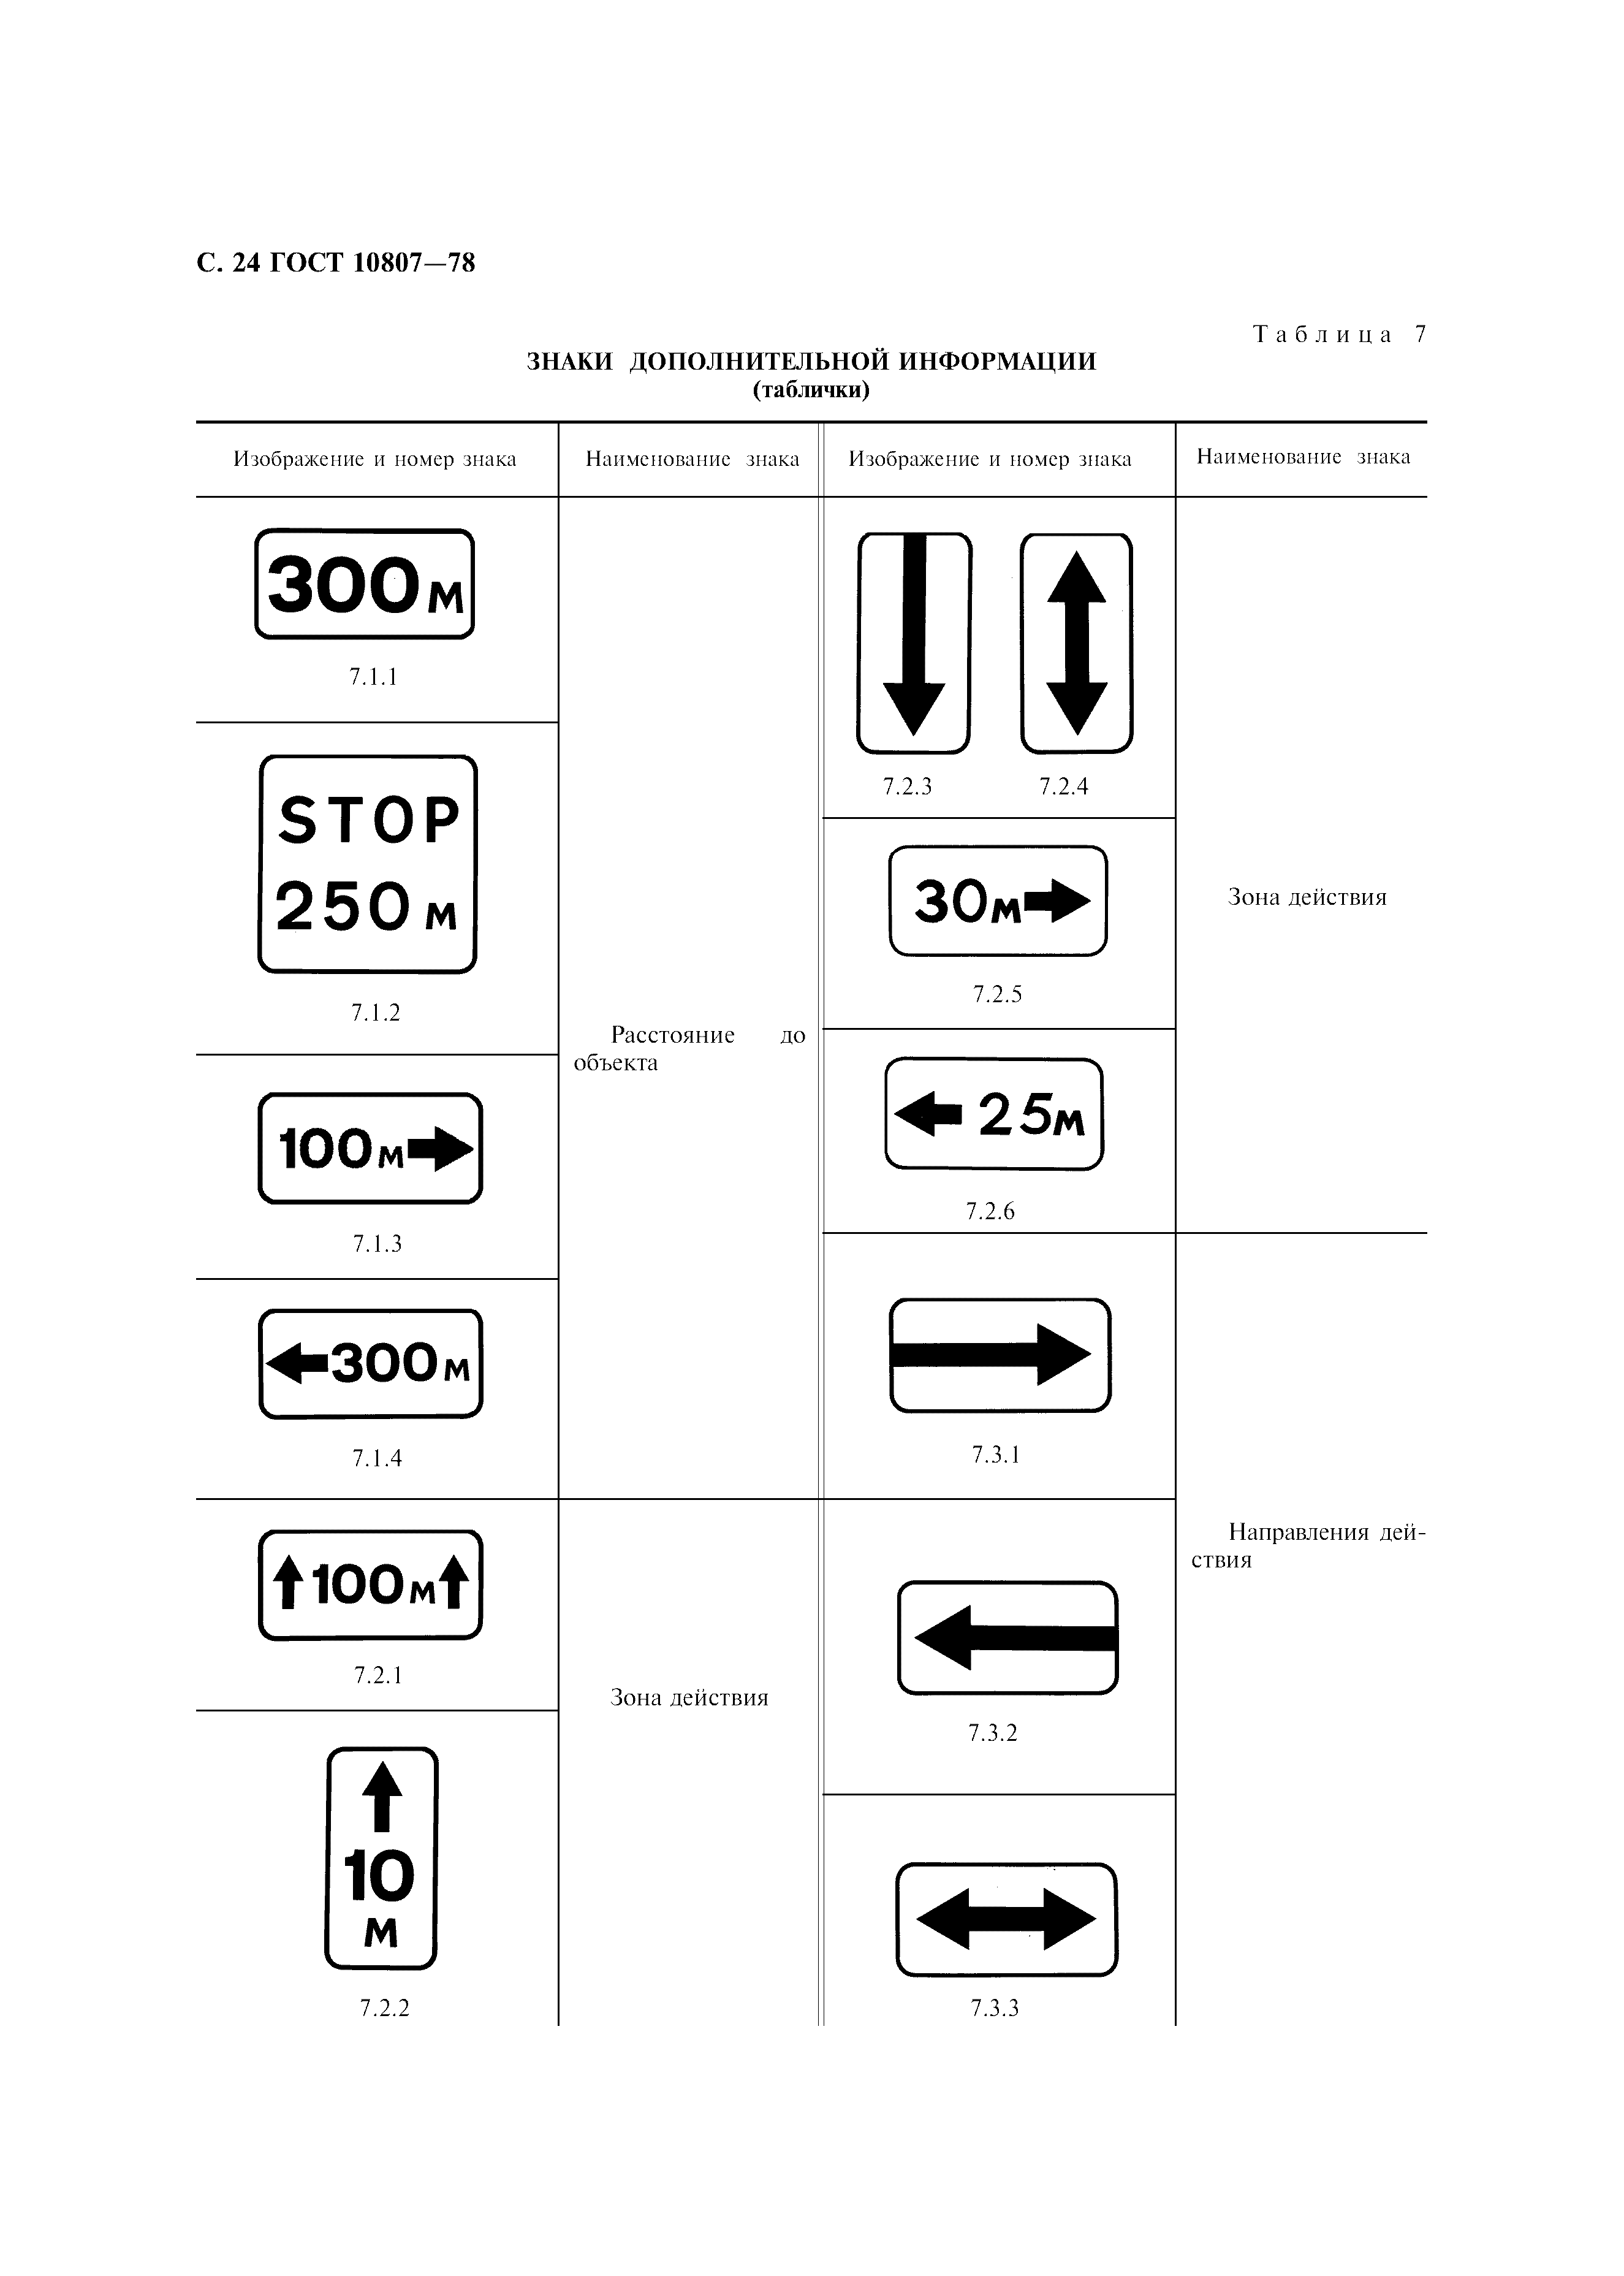 Знаки дорожные по ГОСТ 10807-78